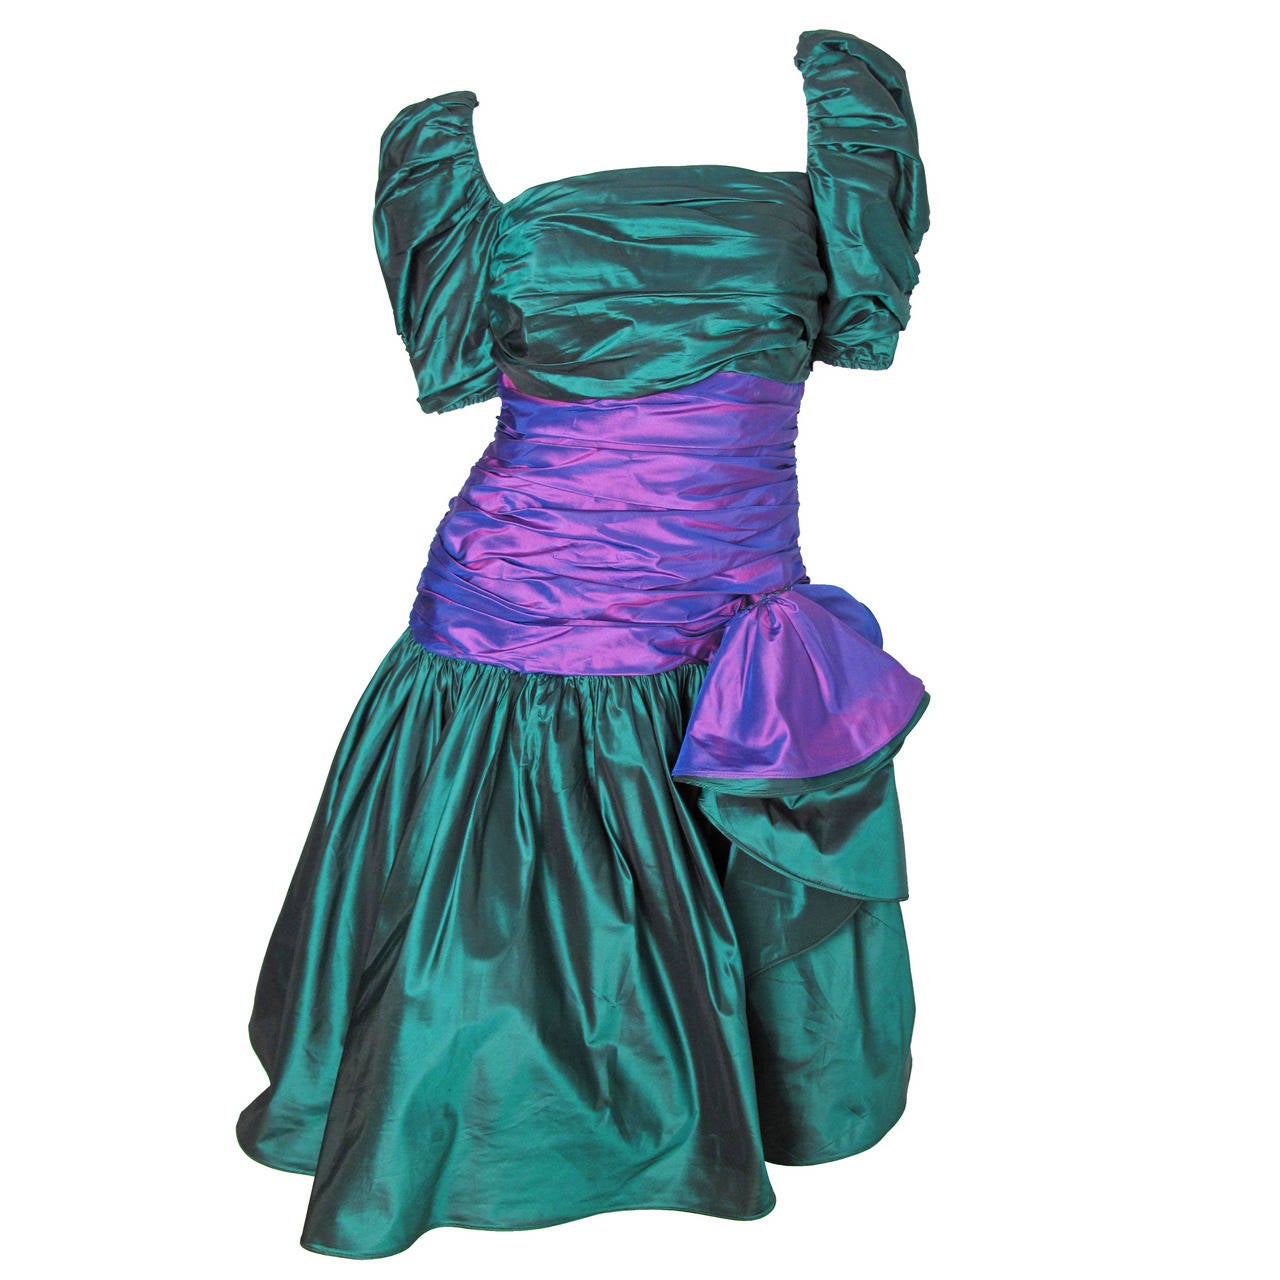 Mignon Green and Purple Taffeta Dress